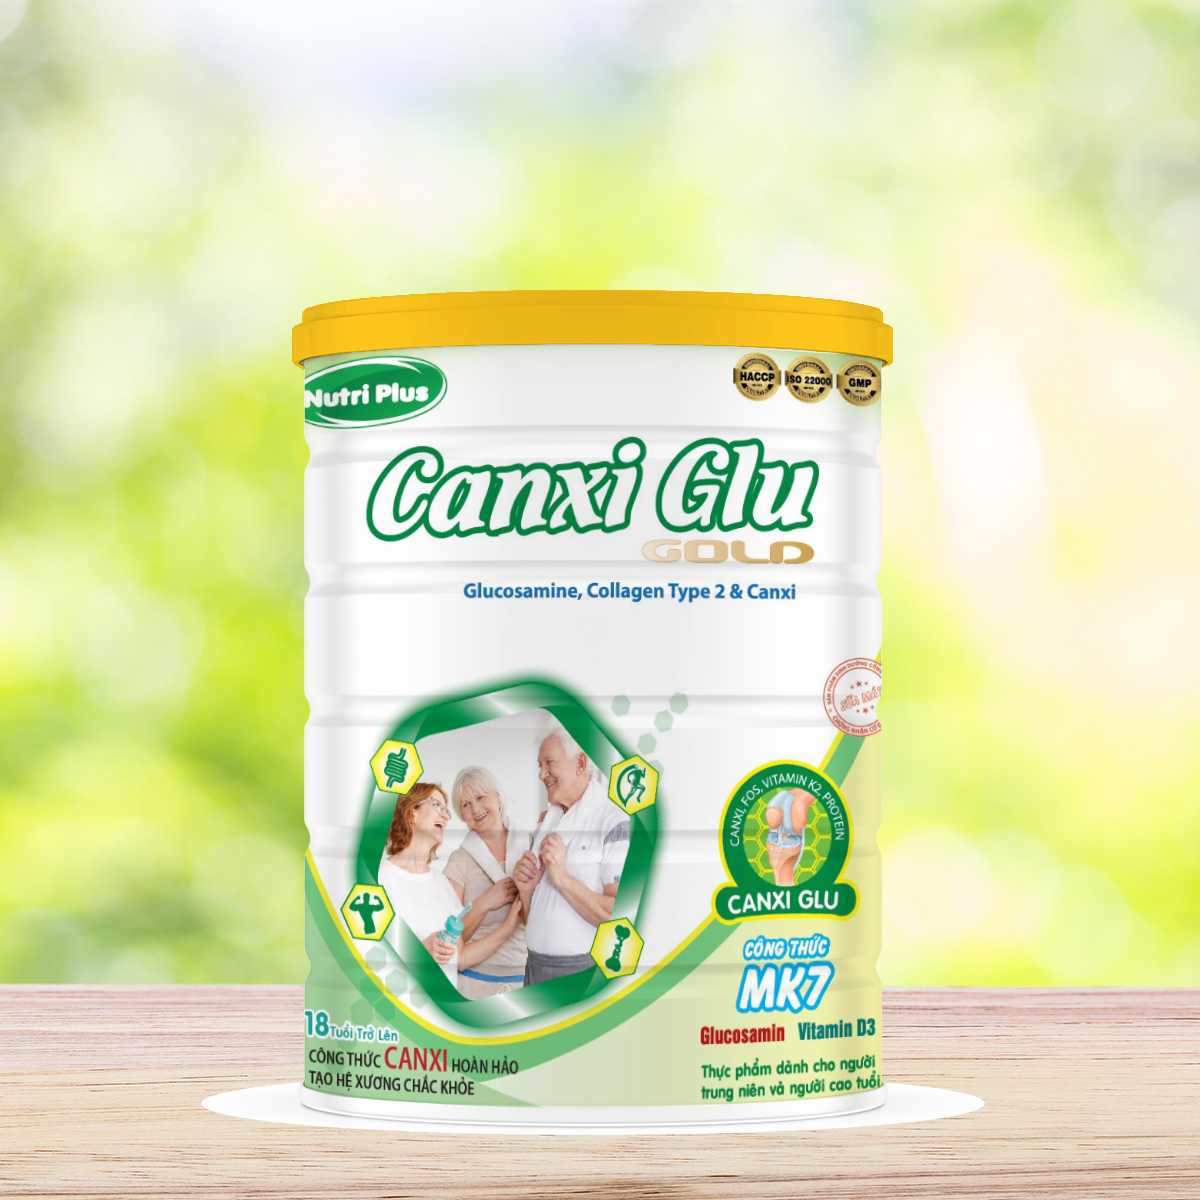 Sữa Canxi Glu bổ sung can xi hoàn hảo giúp tạo hệ xương vững chắc dành cho người già 900G_Nutri plus